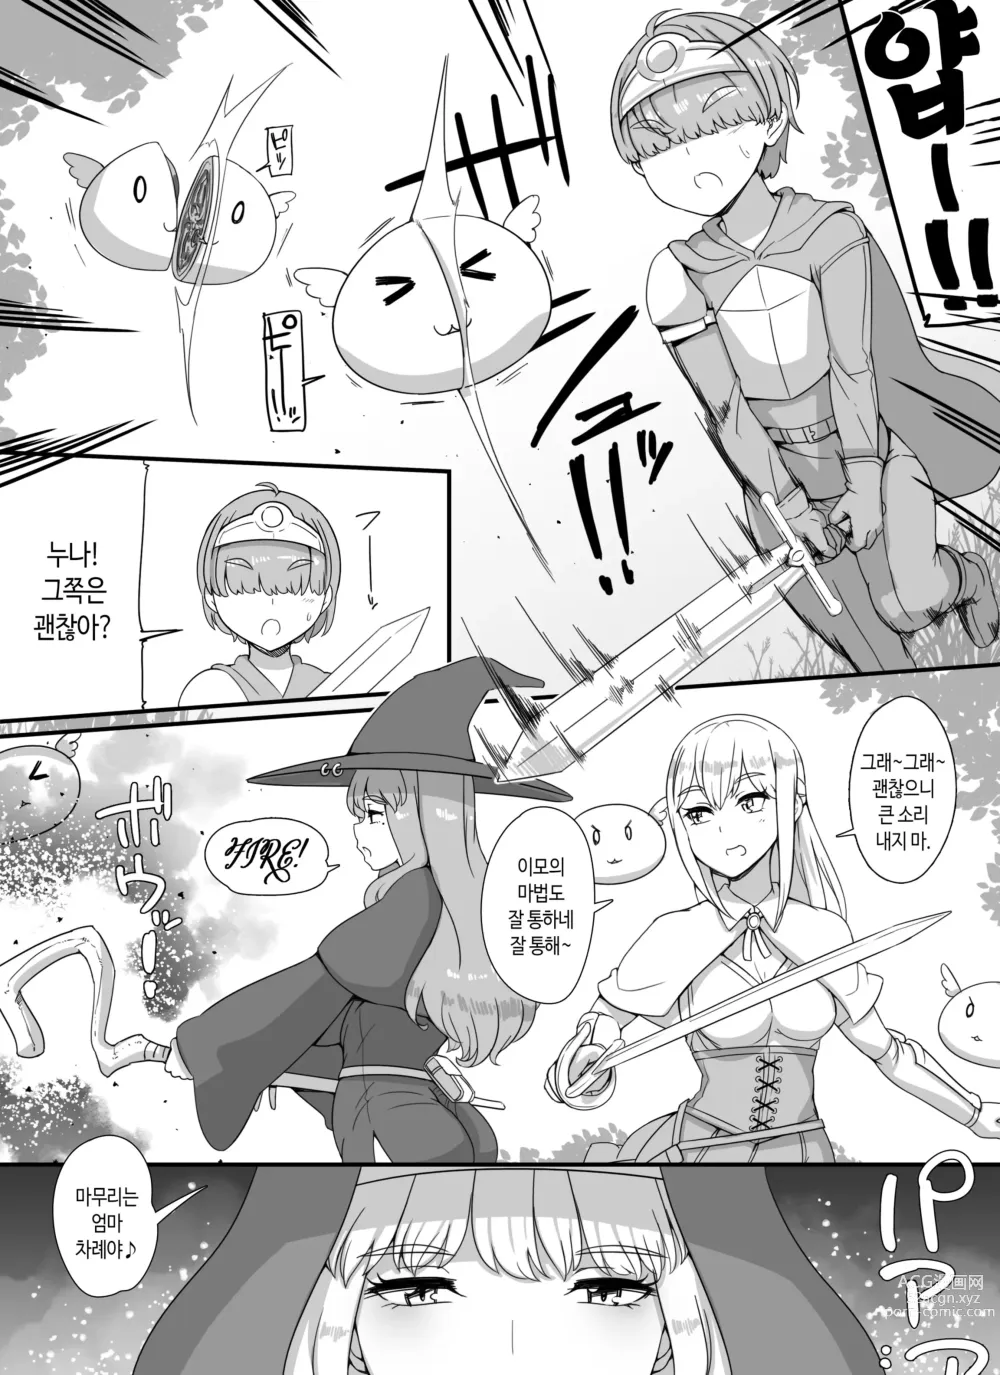 Page 3 of doujinshi 엄마누나이모가 서큐버스인 쇼타 용사 하렘 파티